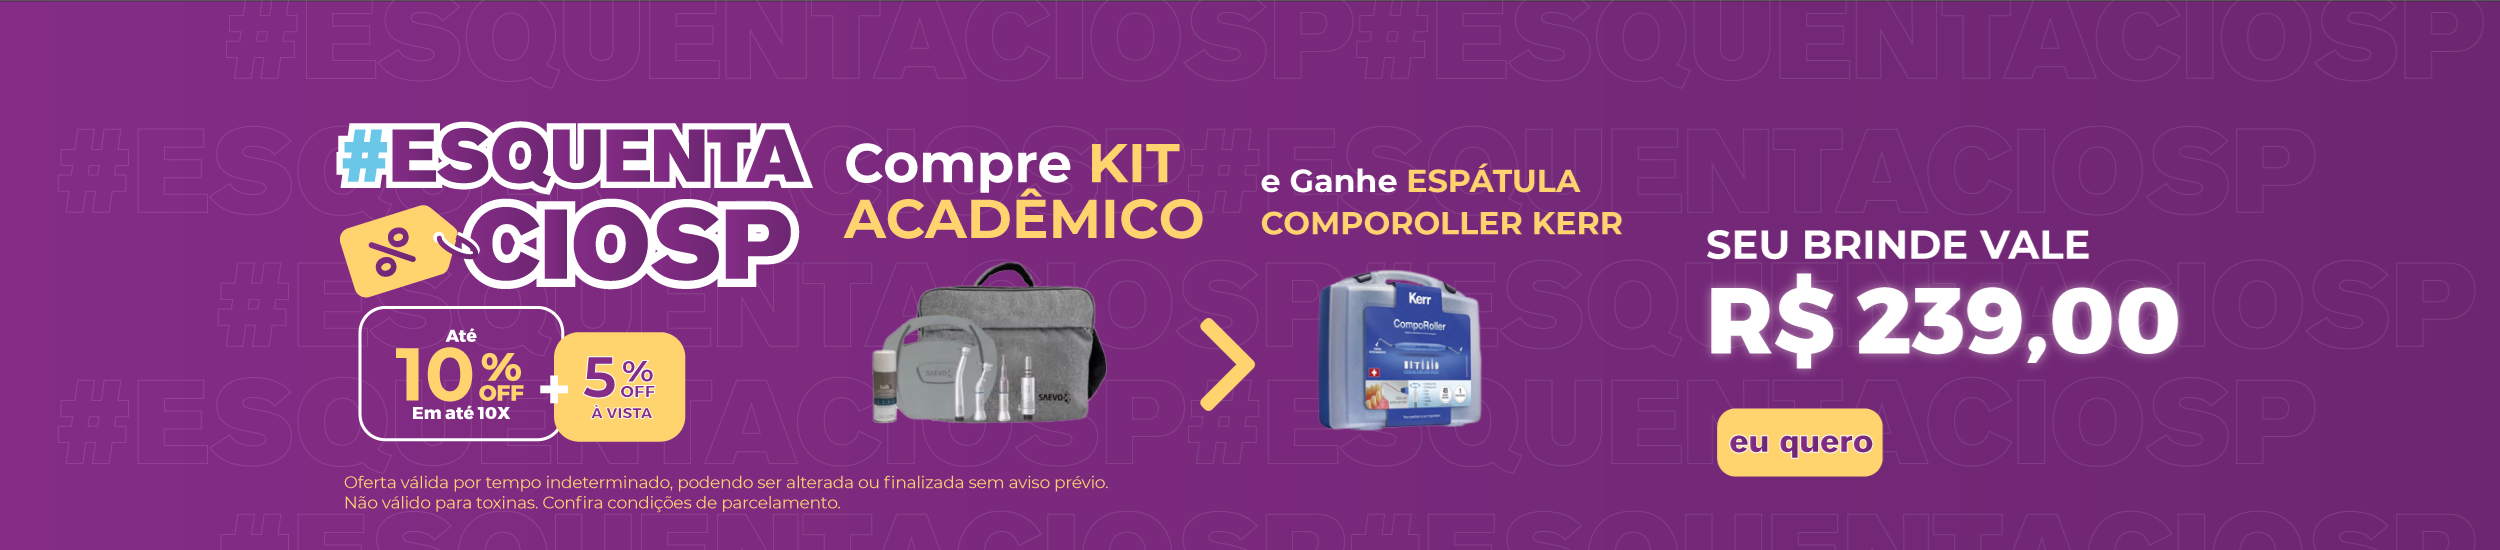 Kit Acadêmico